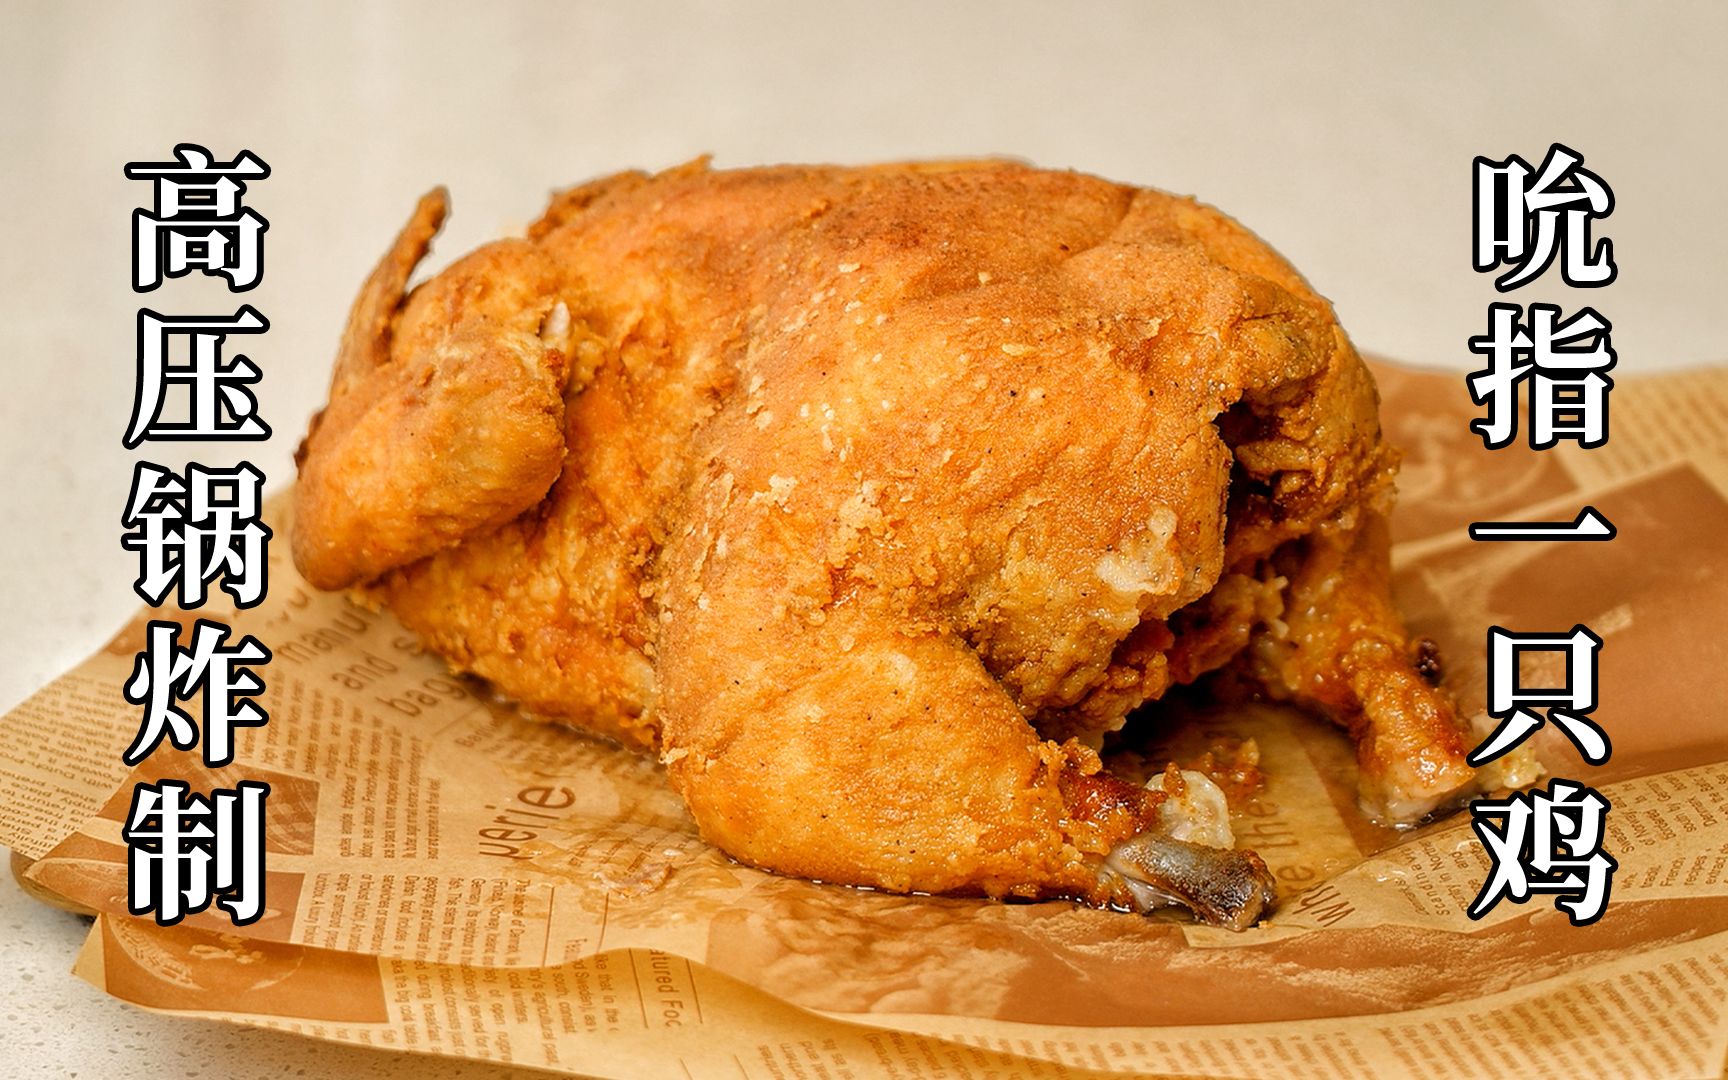 炸鸡店5年老店员在家制作肯德基的吮指原味鸡，一整只的那种